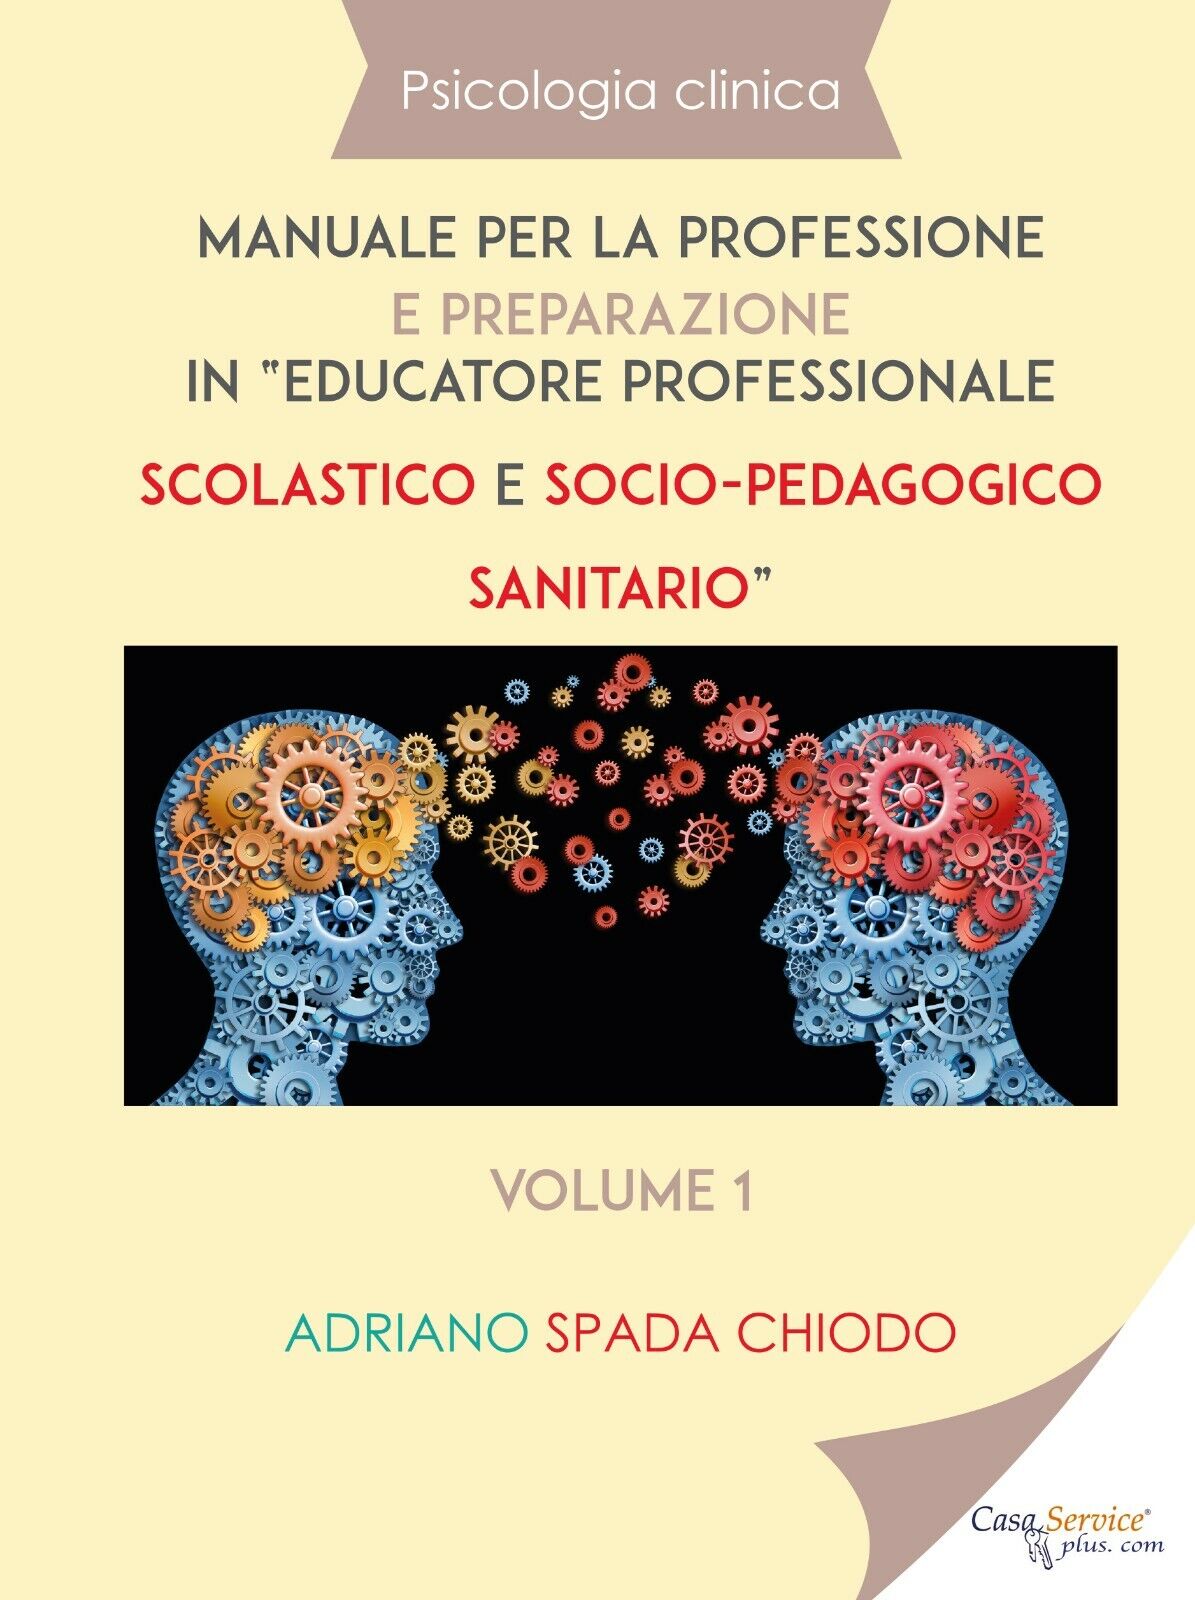 Psicologia clinica - Manuale per la professione e preparazione in educatore prof